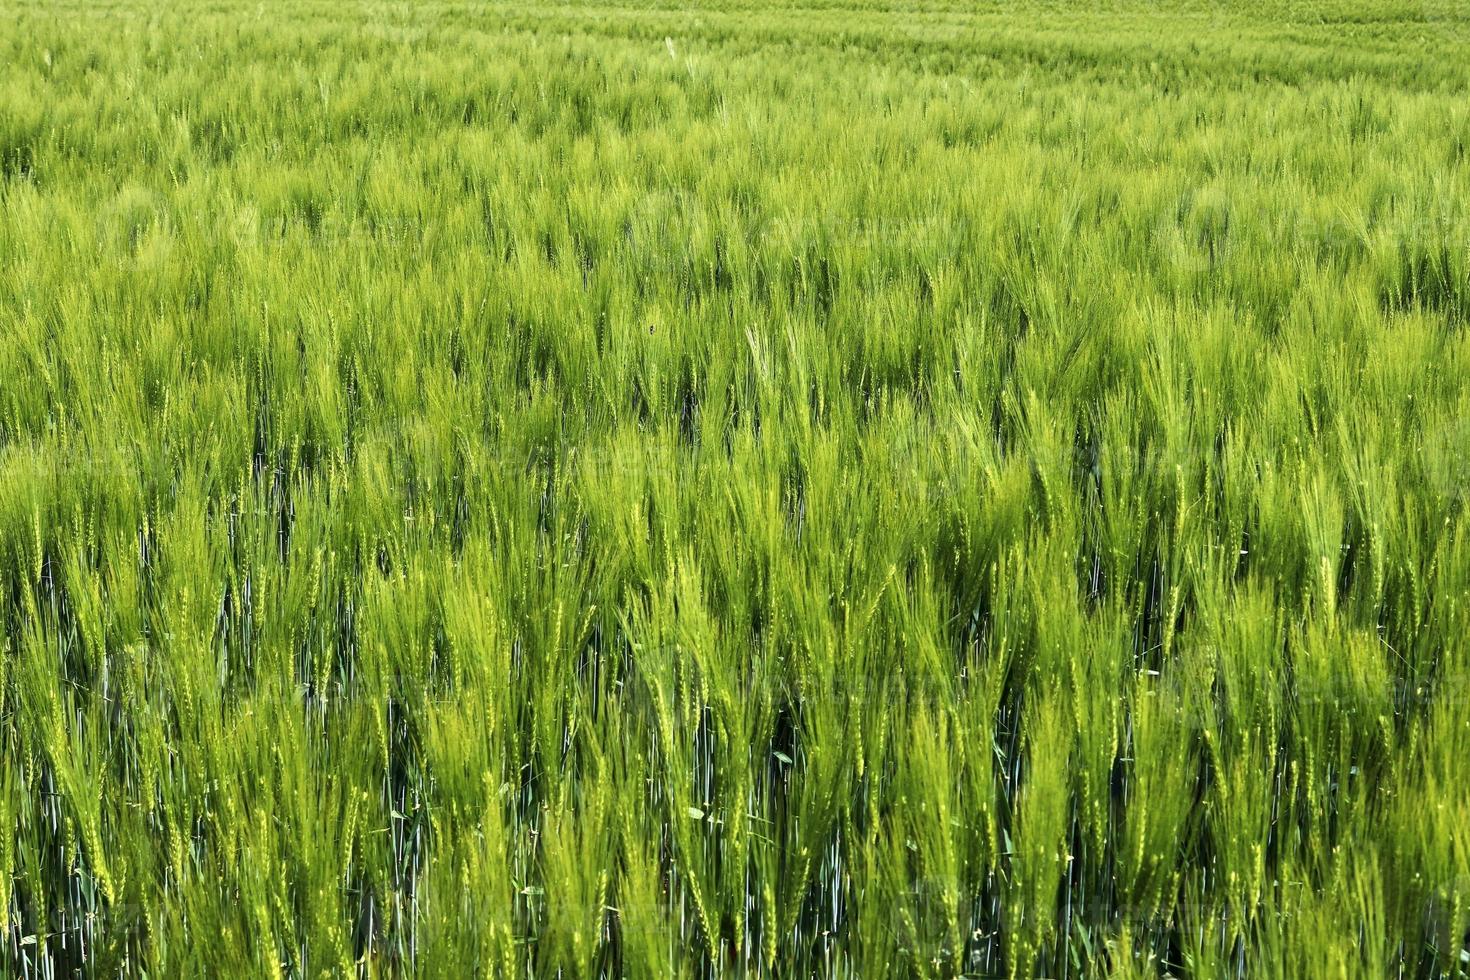 bella e dettagliata vista ravvicinata sulle trame dei campi di grano e colture nell'Europa settentrionale. foto